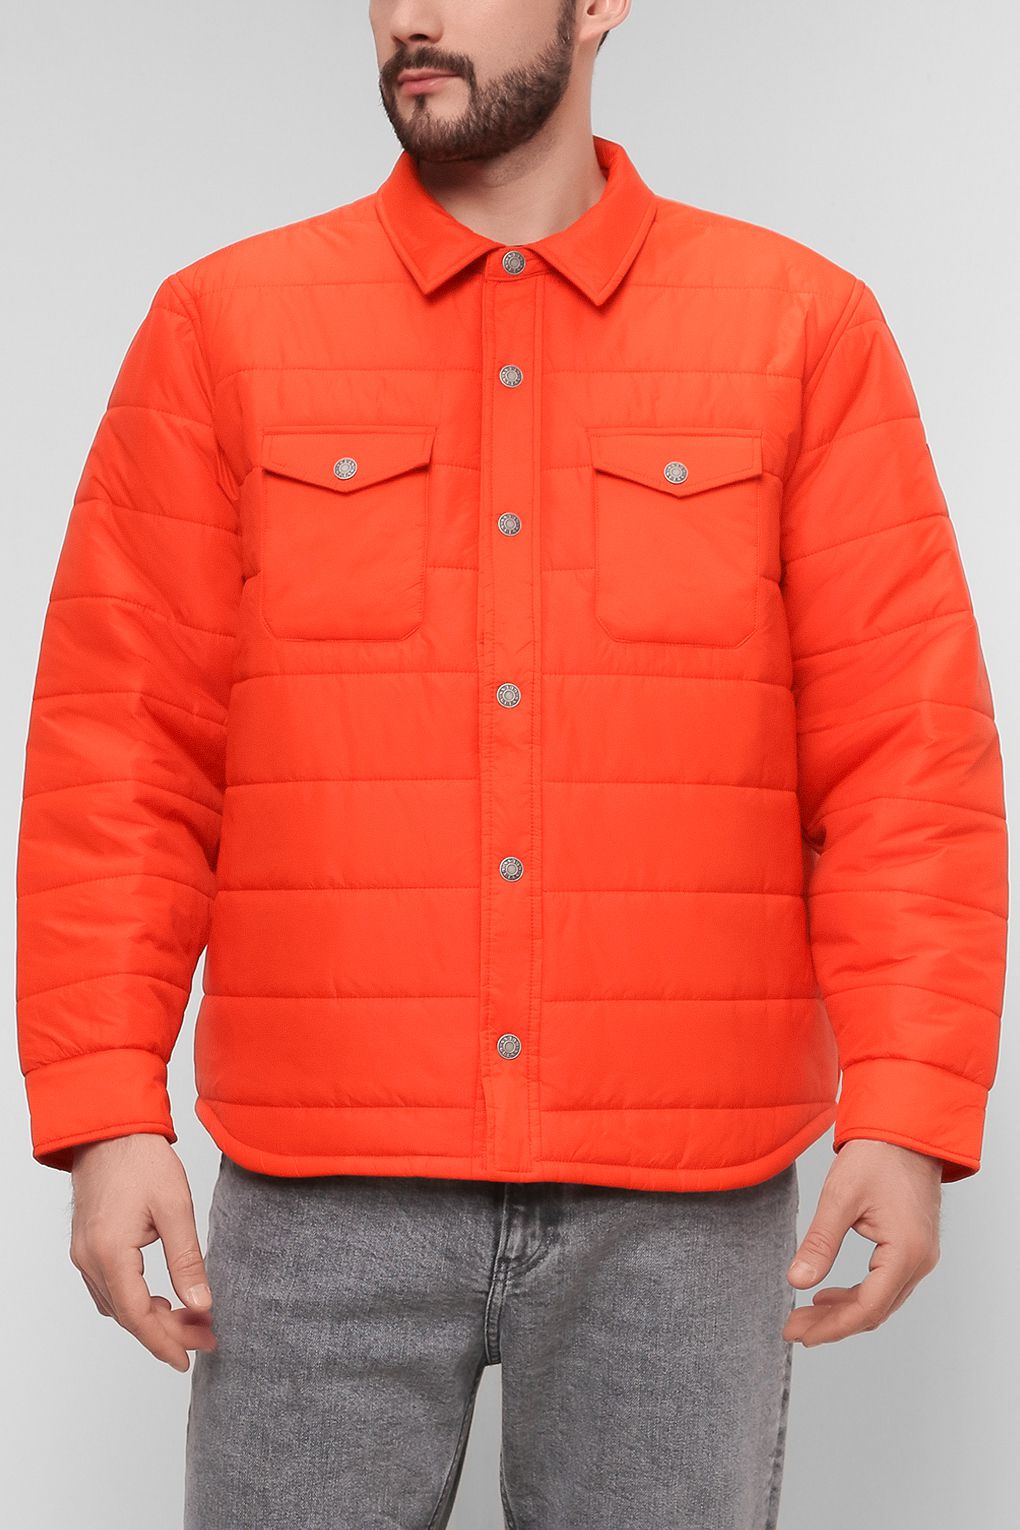 Куртка мужская Guess M1RL00 WEI10 оранжевая L